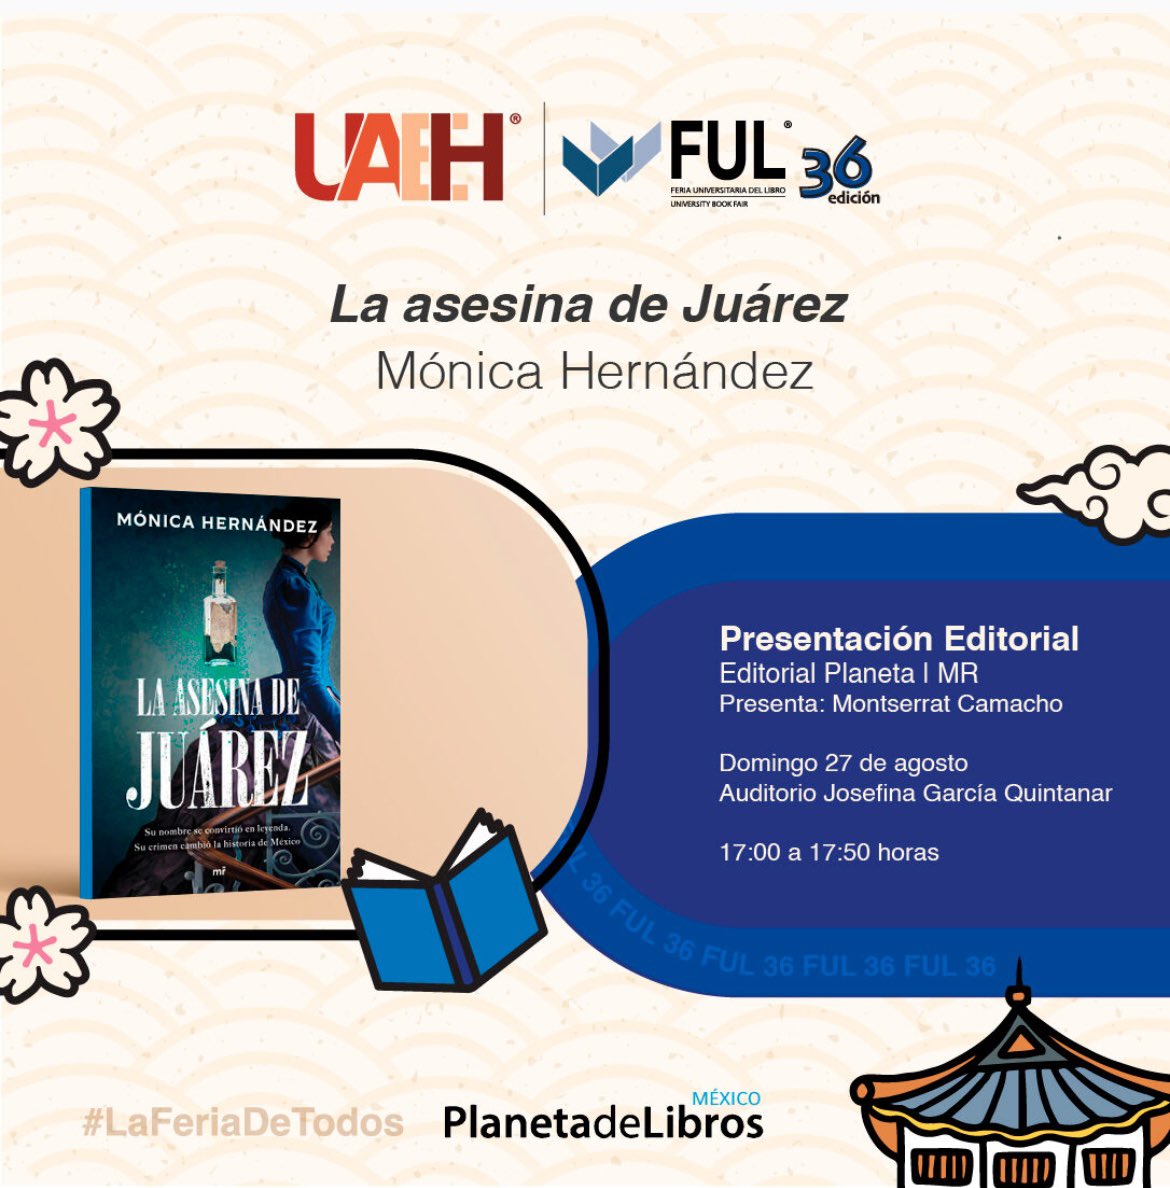 Este domingo 27 de agosto (mi santo!!!) en el marco de la @UAEH_OFICIAL y la #FUL 36, a las 17:00 hrs, en el Auditorio Josefina Garcia Quintanar. Los esperamos para hablar de leyendas y de literatura #LaAsesinadeJuárez @PlanetaLibrosMx